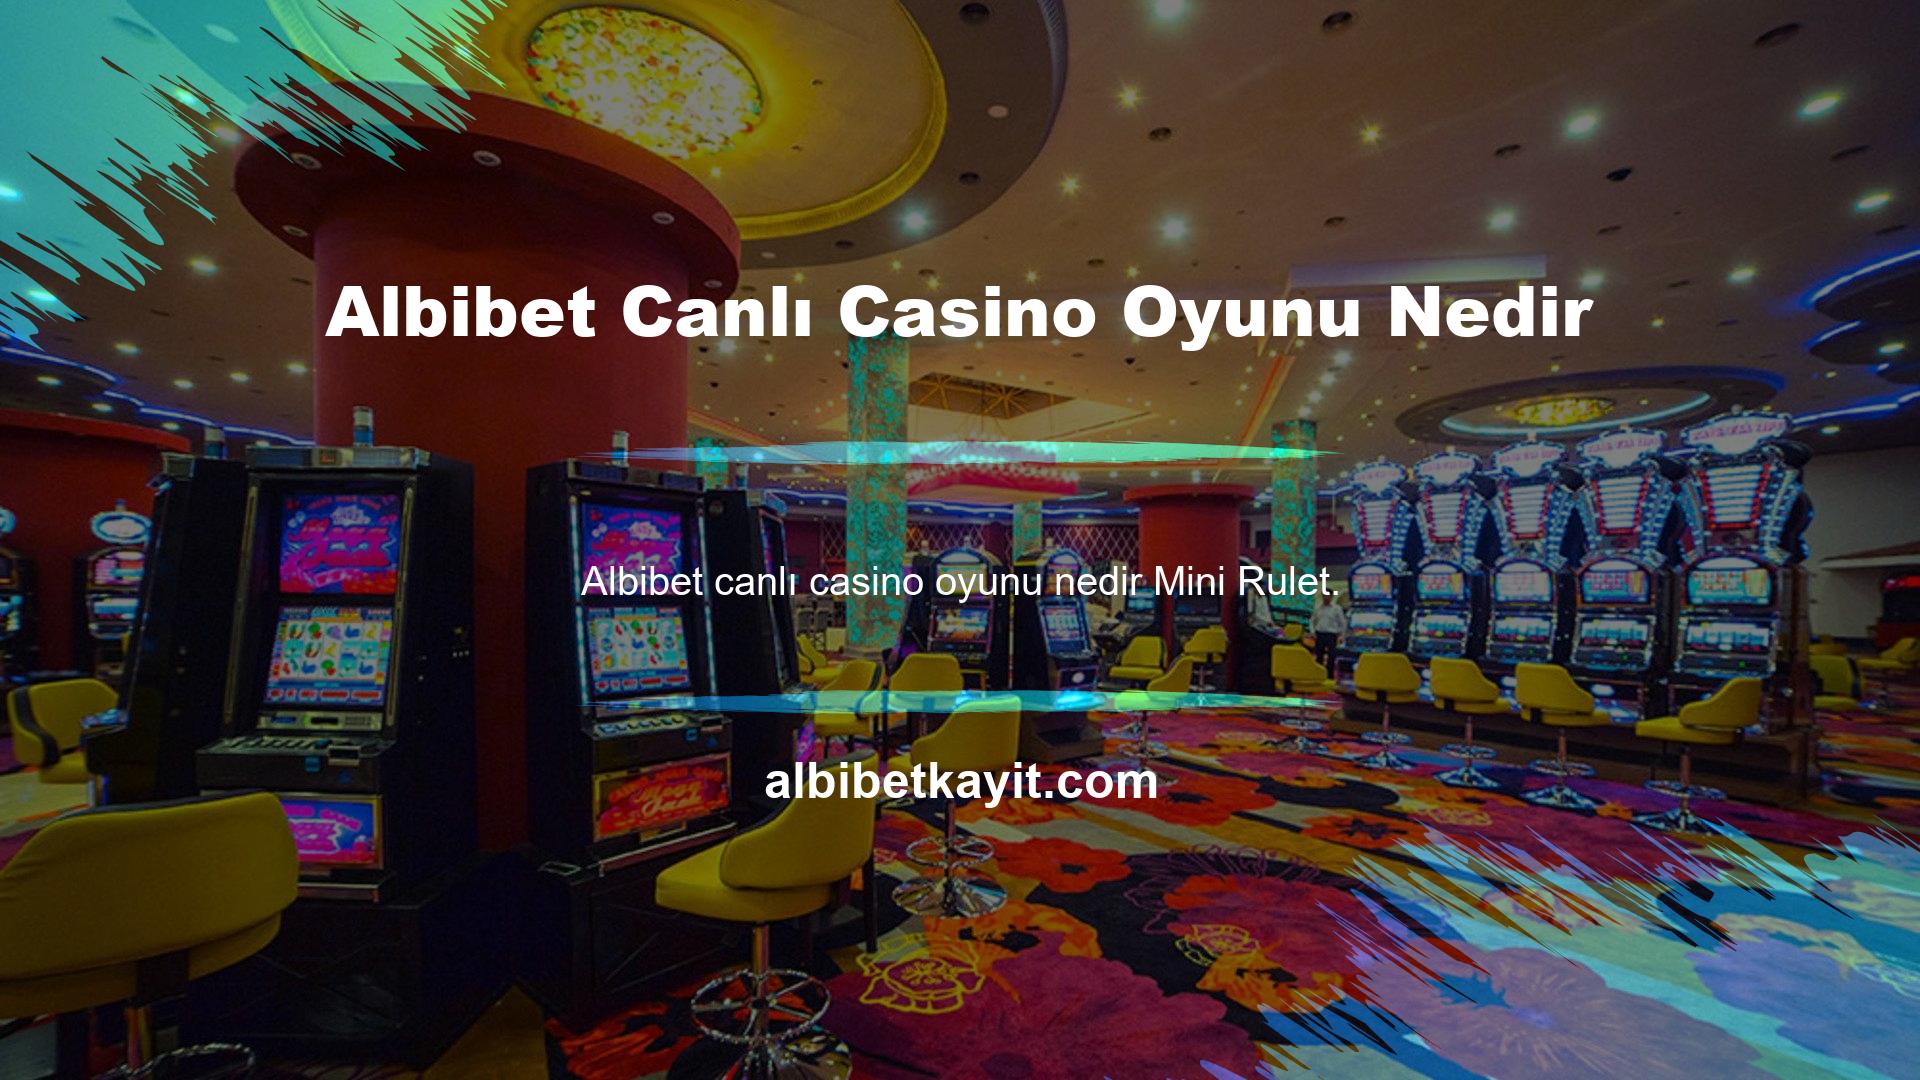 Albibet Canlı Casino Oyunu Nedir